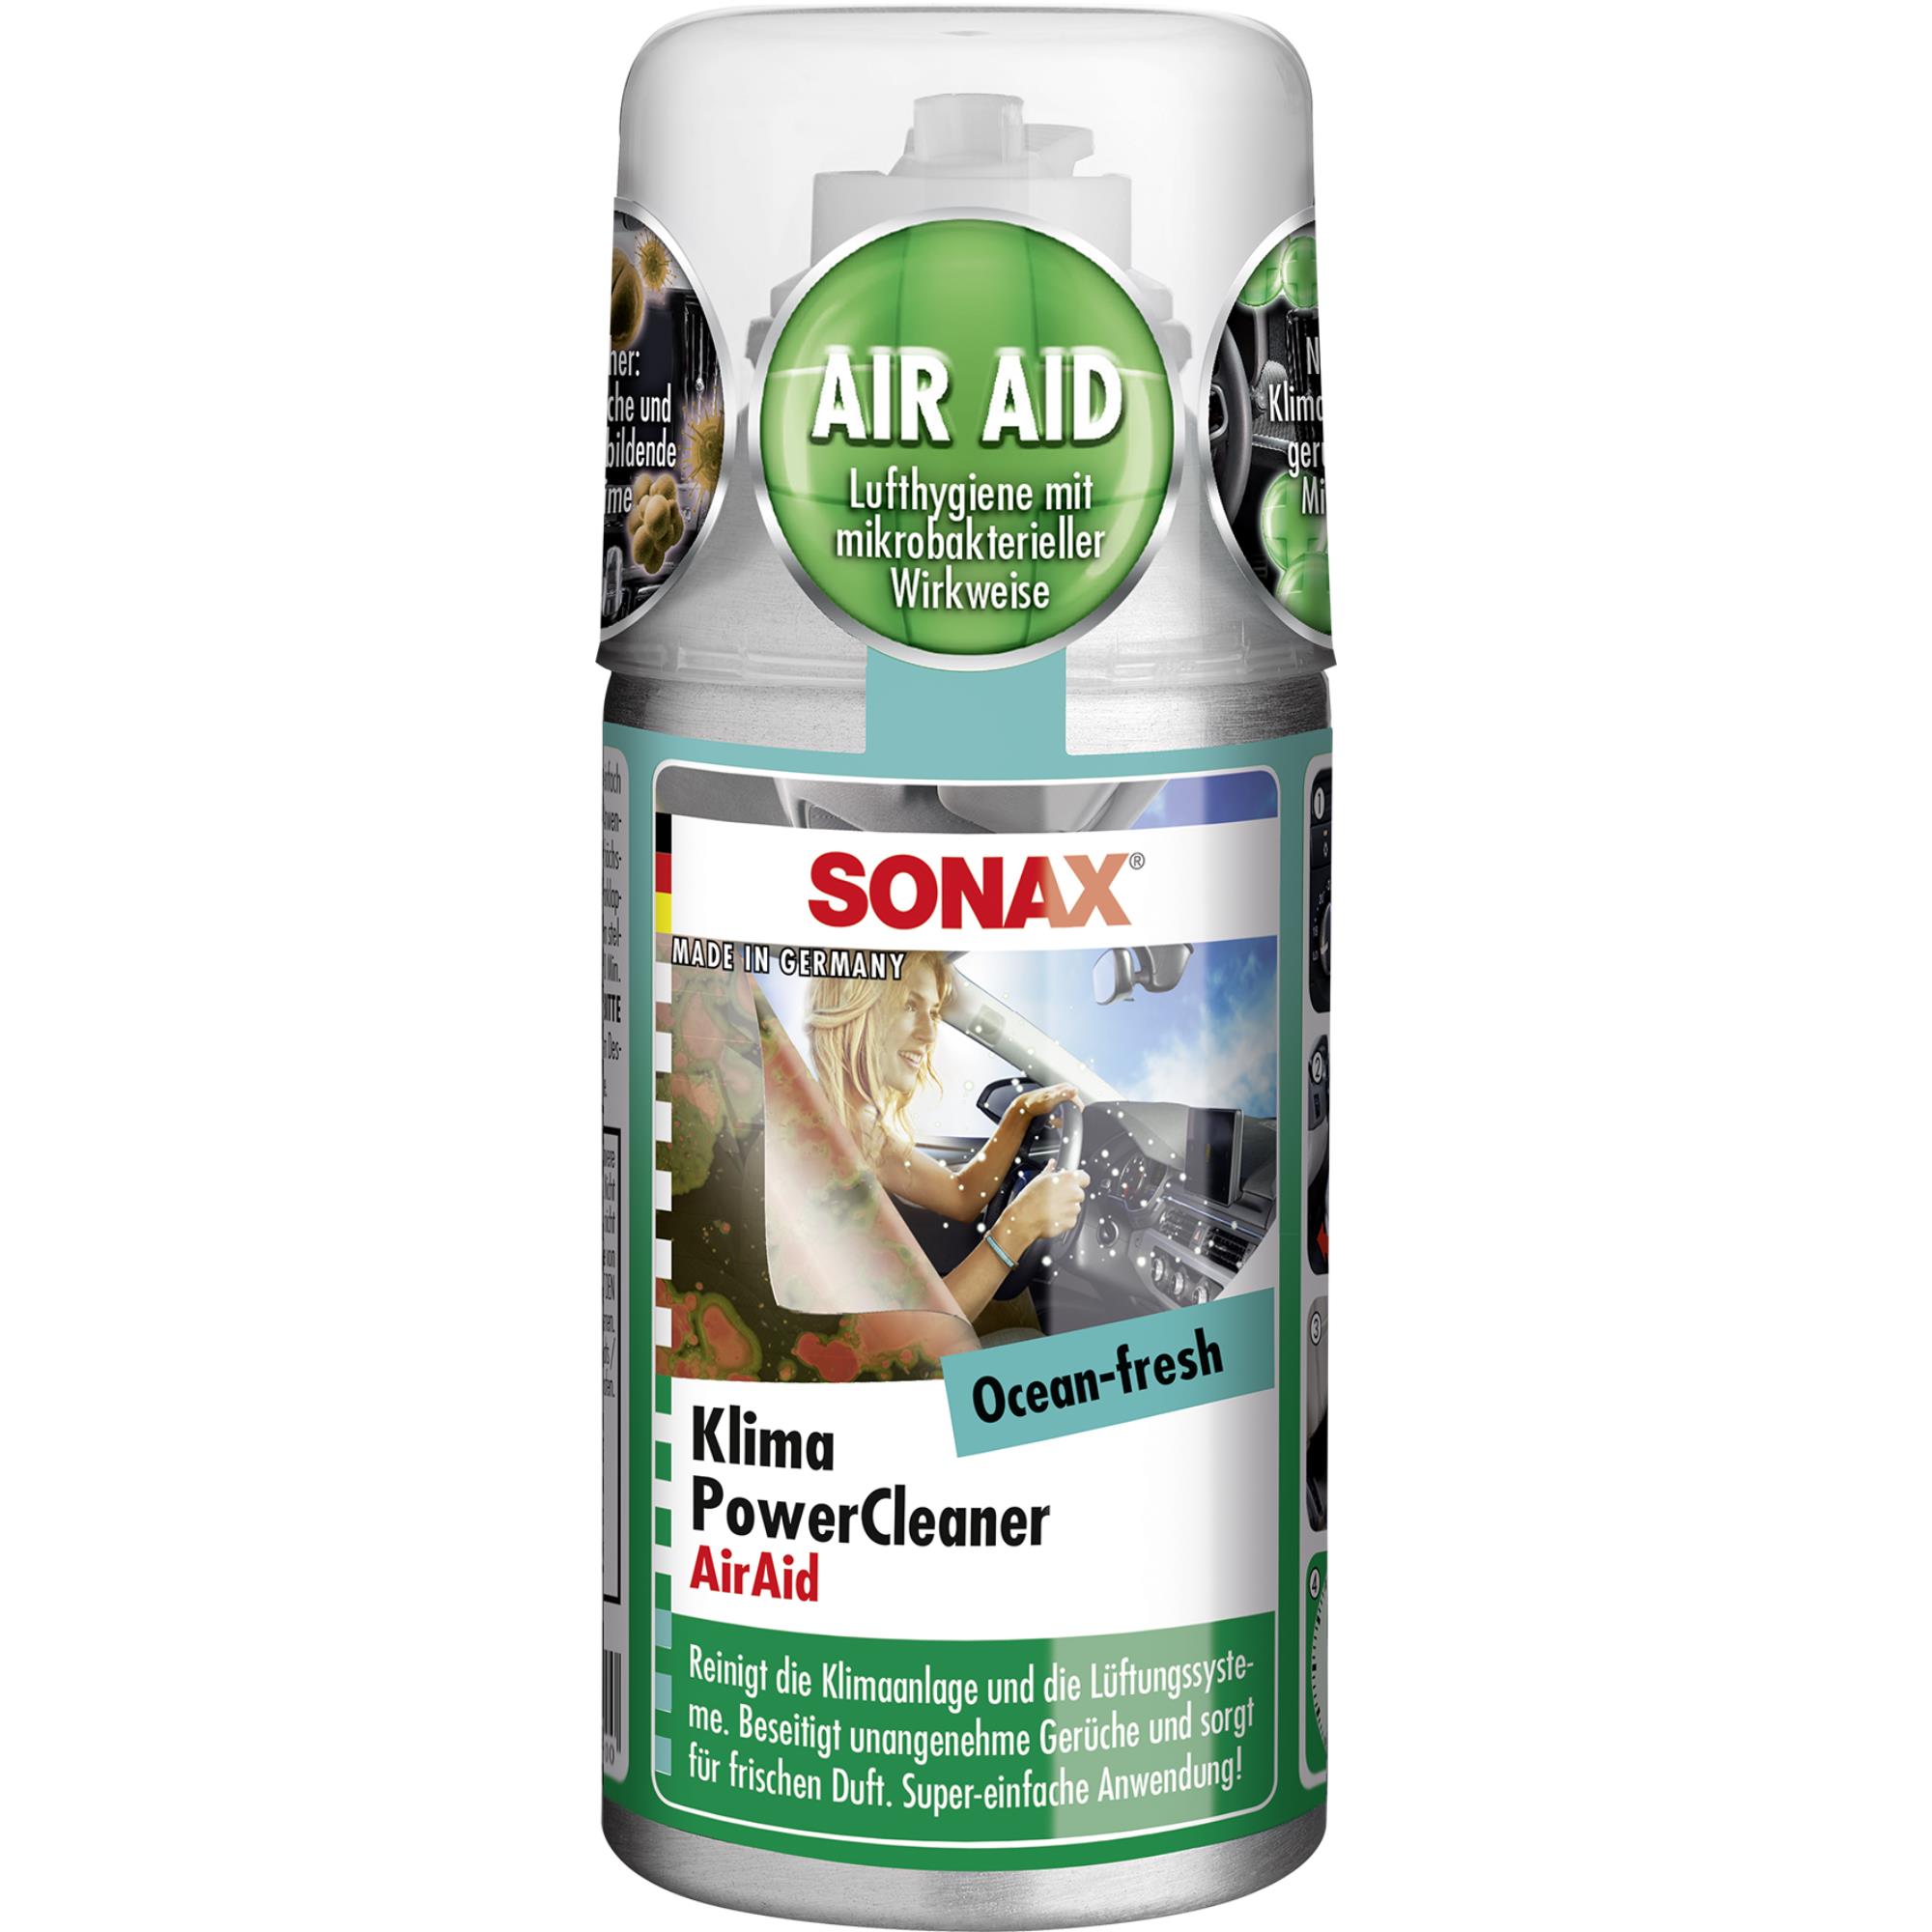 SONAX KlimaPowerCleaner AirAid Ocean-fresh Klimaanlagenreiniger 100 ml